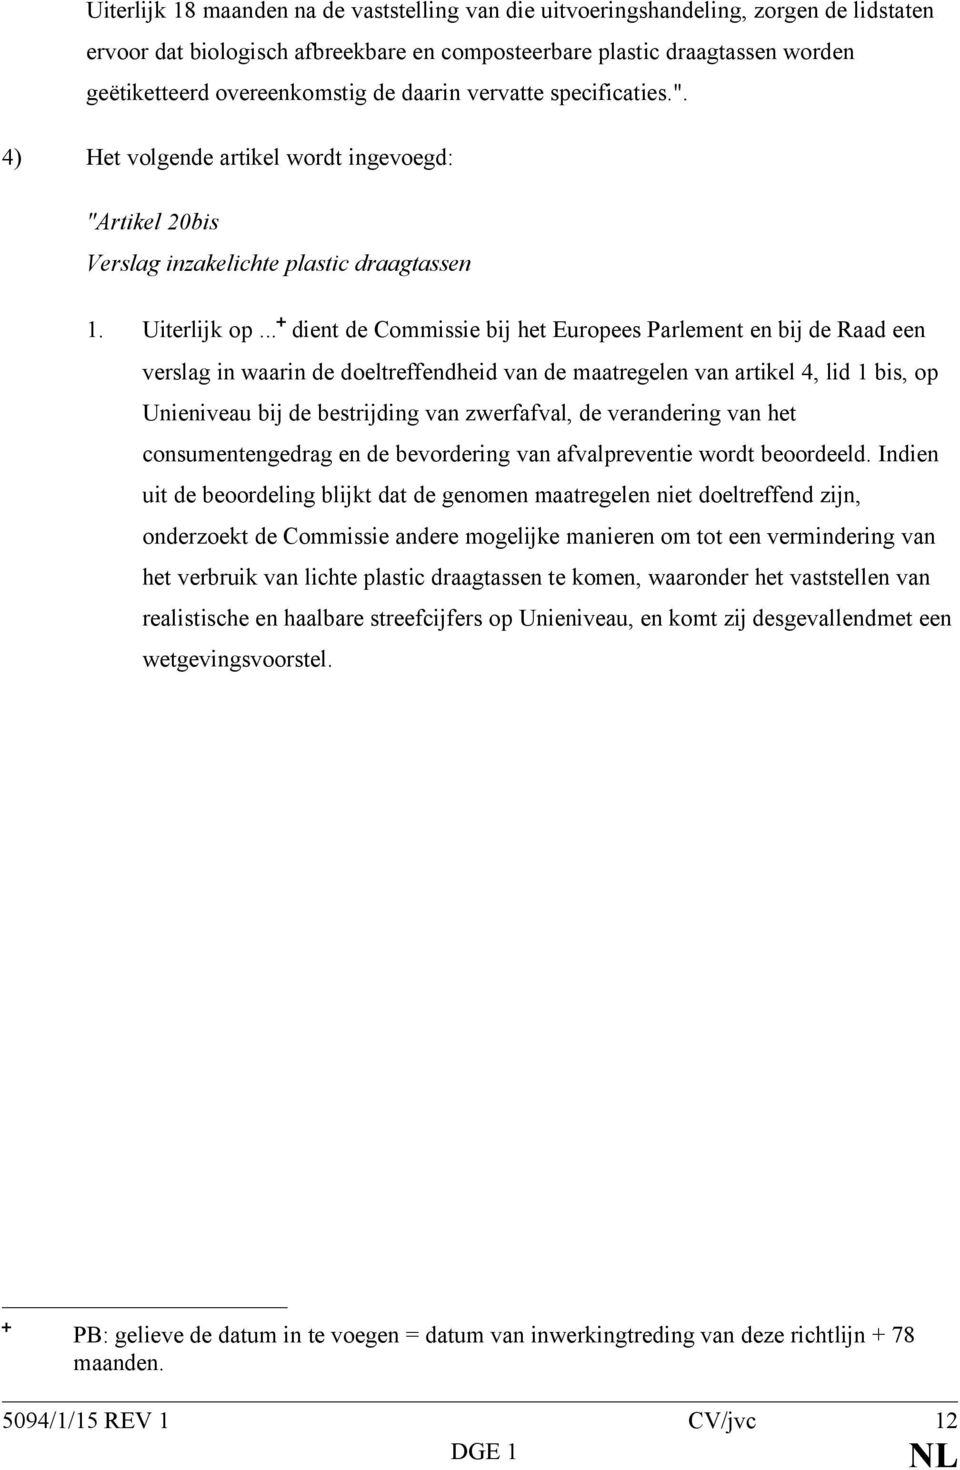 .. dient de Commissie bij het Europees Parlement en bij de Raad een verslag in waarin de doeltreffendheid van de maatregelen van artikel 4, lid 1 bis, op Unieniveau bij de bestrijding van zwerfafval,